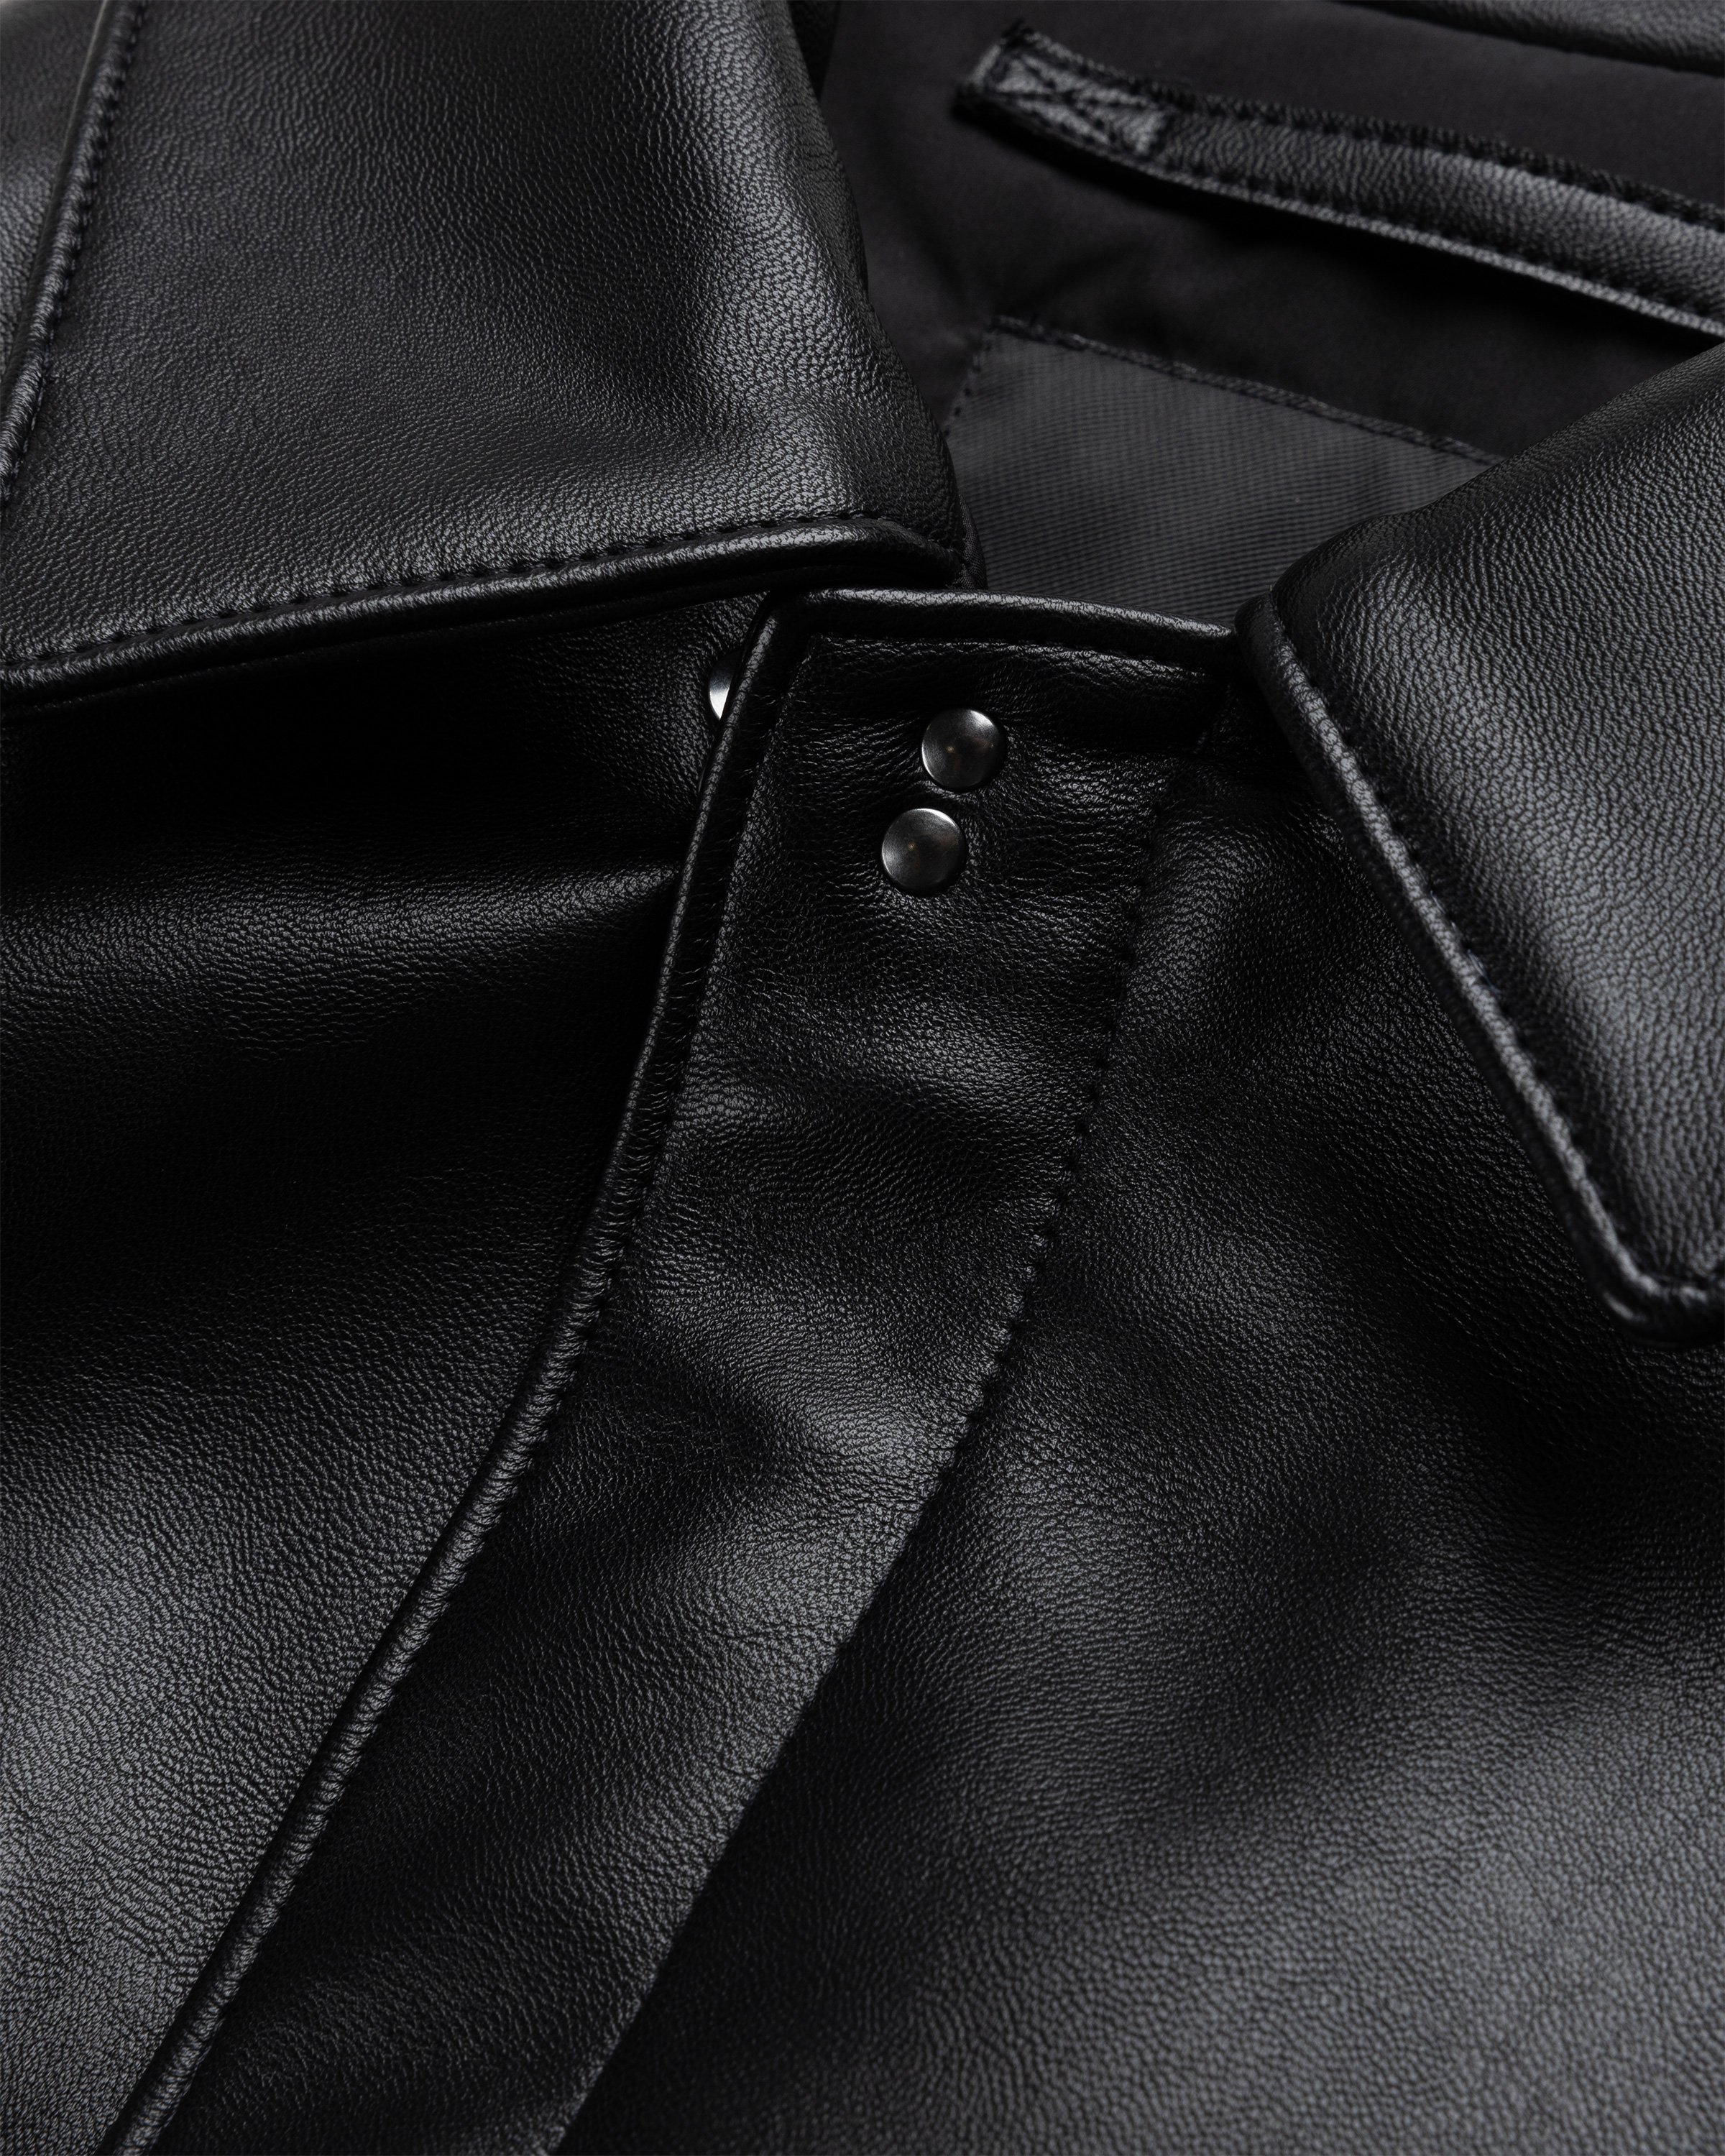 Y-3 - Leather Bomber Jacket Black - Clothing - Black - Image 6